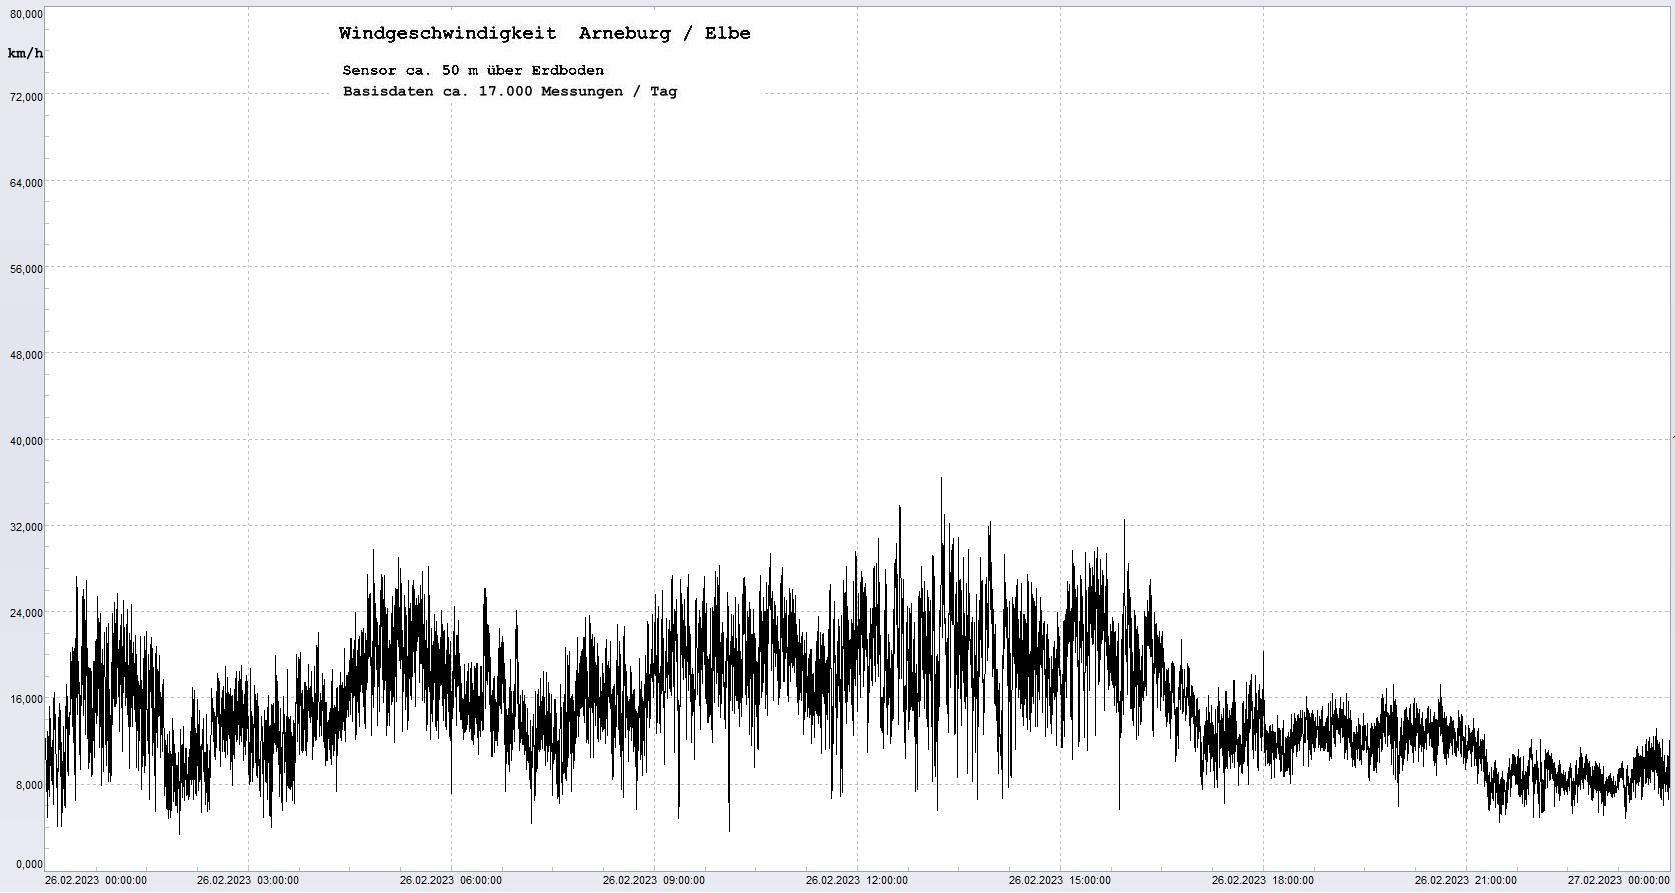 Arneburg Tages-Diagramm Winddaten, 26.02.2023
  Diagramm, Sensor auf Gebäude, ca. 50 m über Erdboden, Basis: 5s-Aufzeichnung